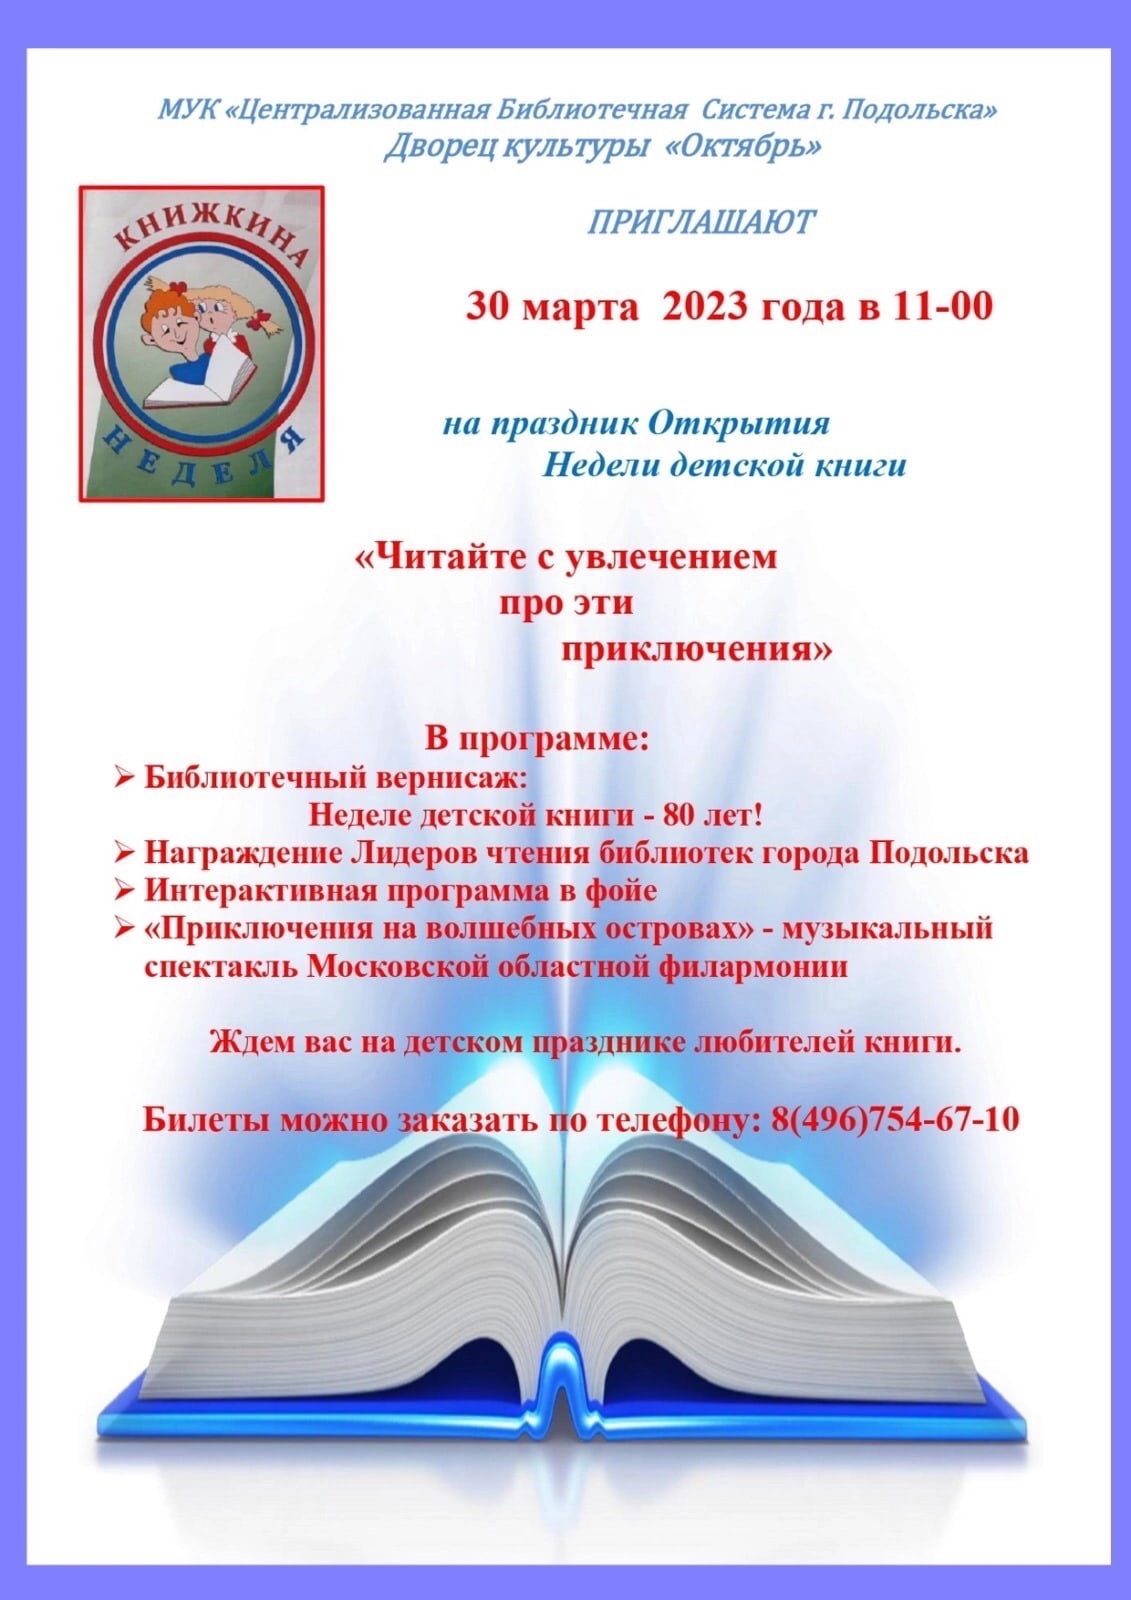 Открытие традиционной недели детской книги состоится в Подольске 30 марта